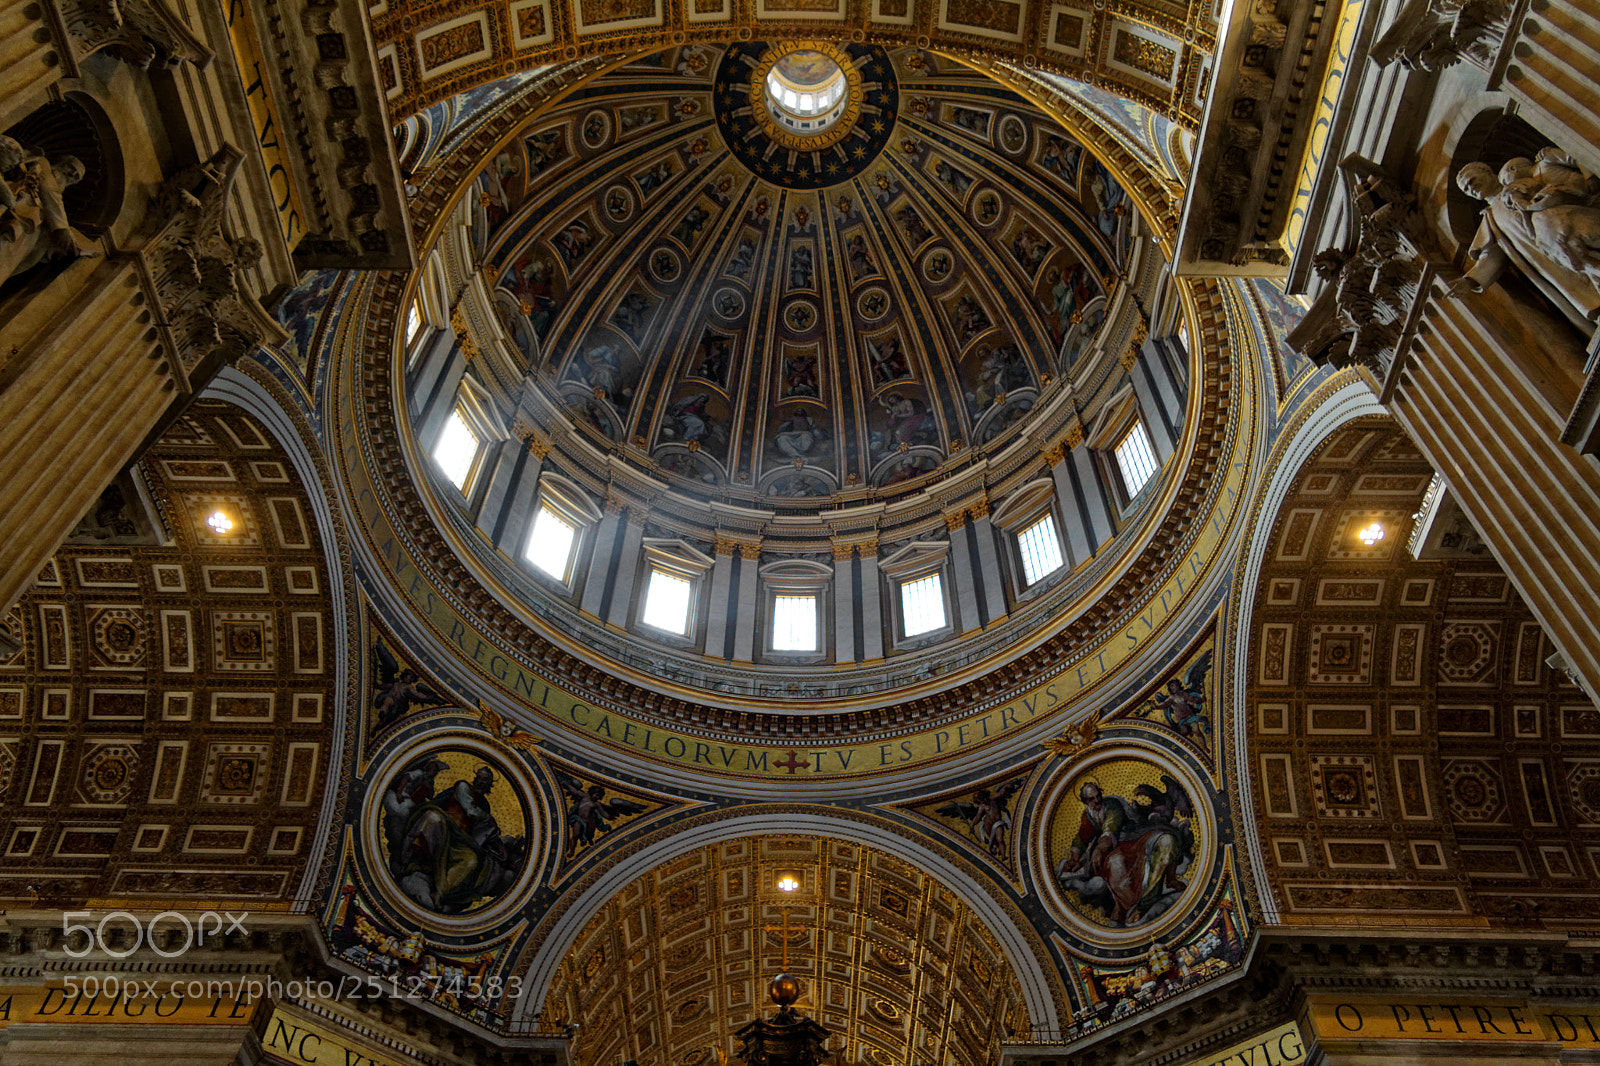 Nikon D5200 sample photo. St. peter's basilica interior photography